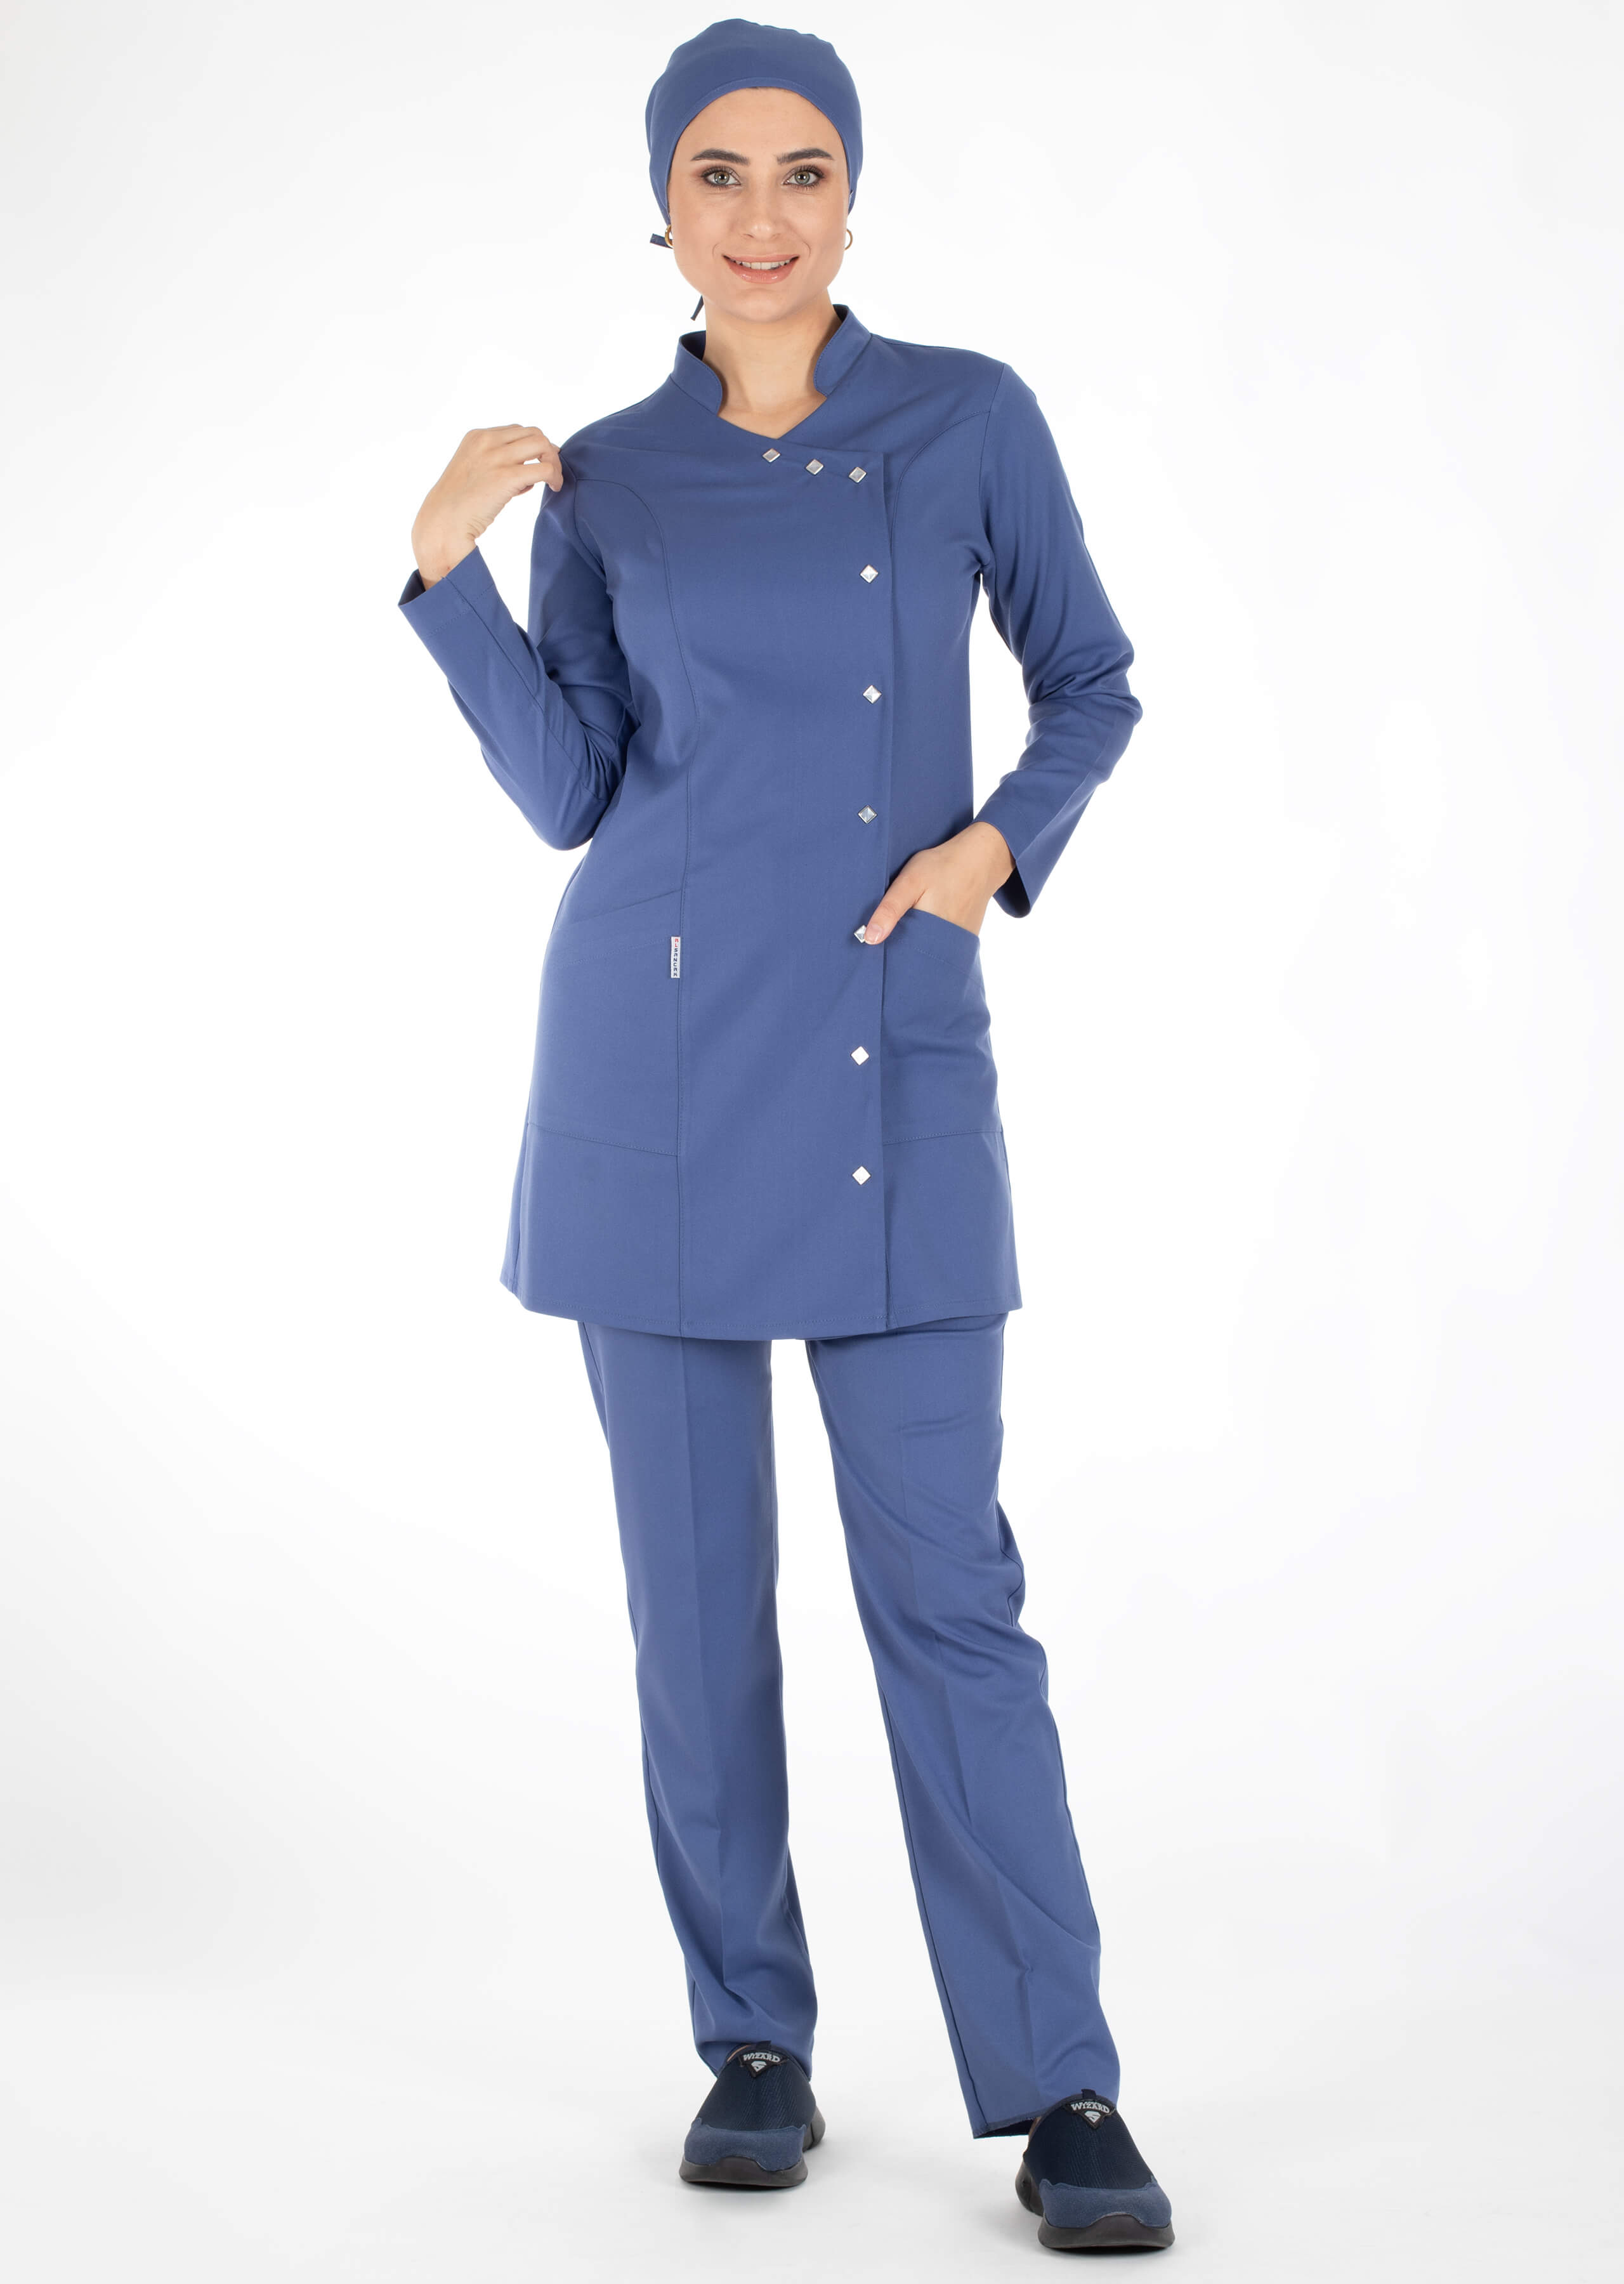 Luxe Model Fırtına Mavi Likralı Tesettür Hemşire Doktor Forması Takımı